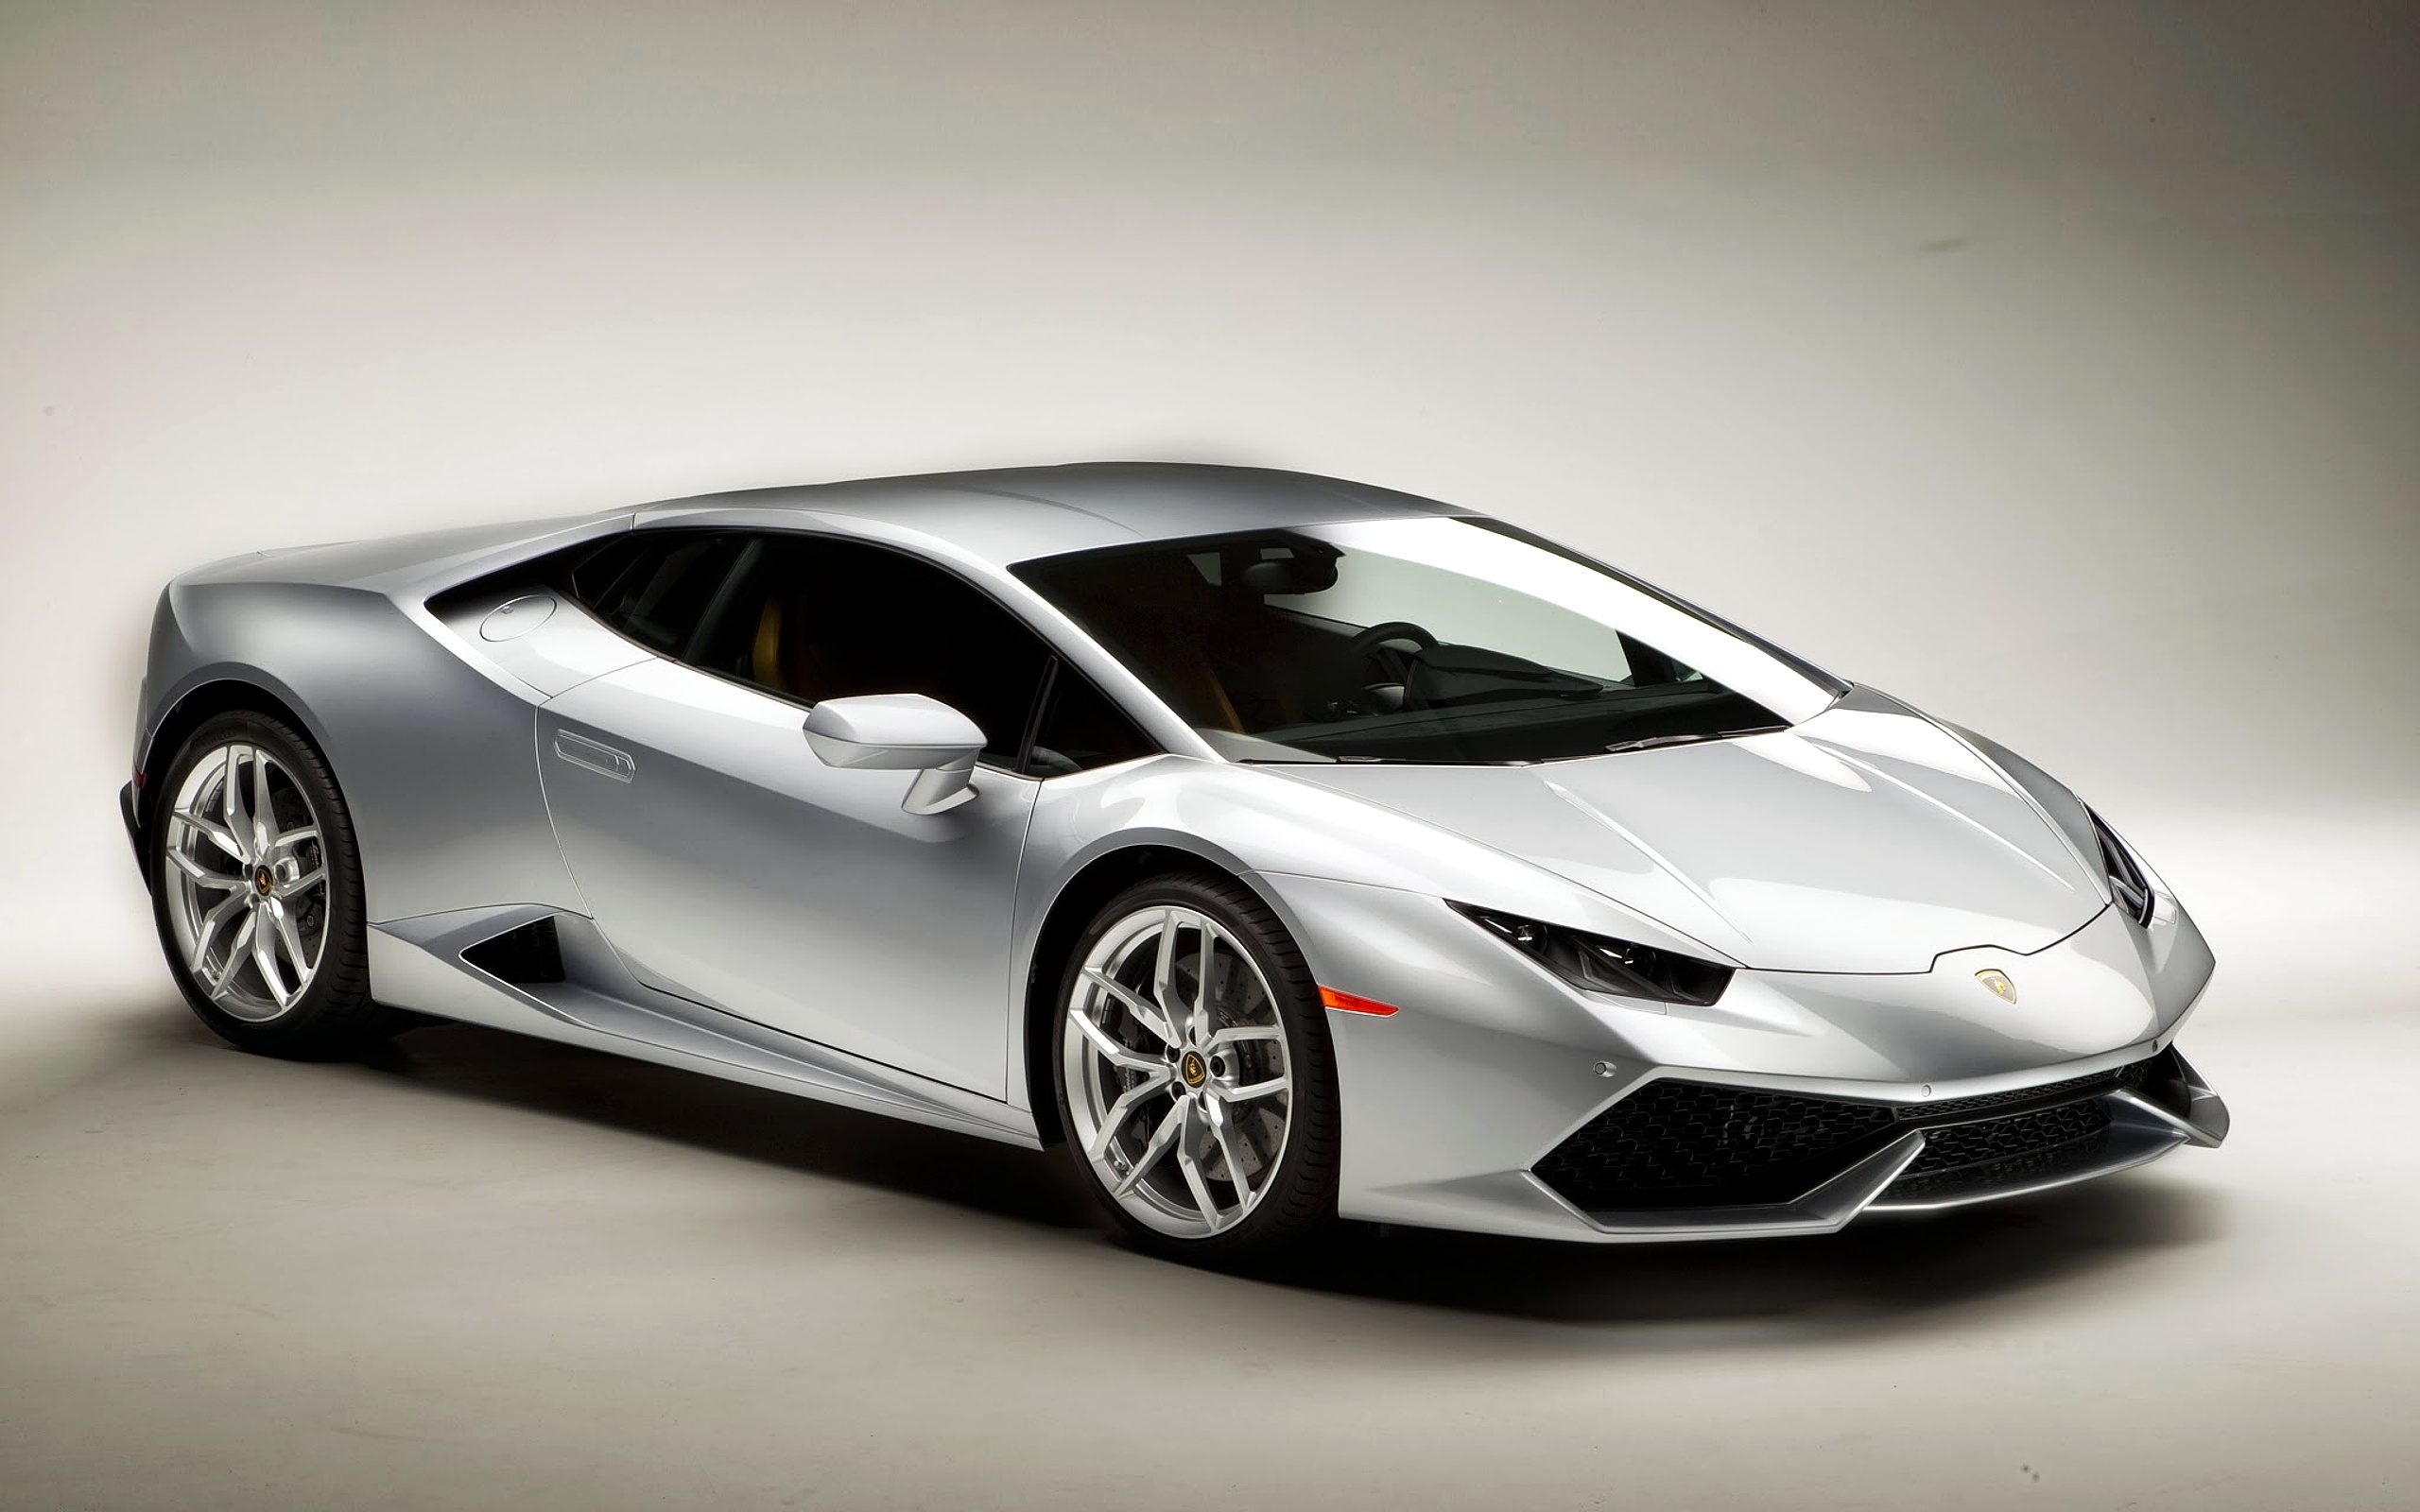 Lamborghini Huracan, HD Lamborghini wallpaper, Luxurious performance, Visual treat, 2560x1600 HD Desktop